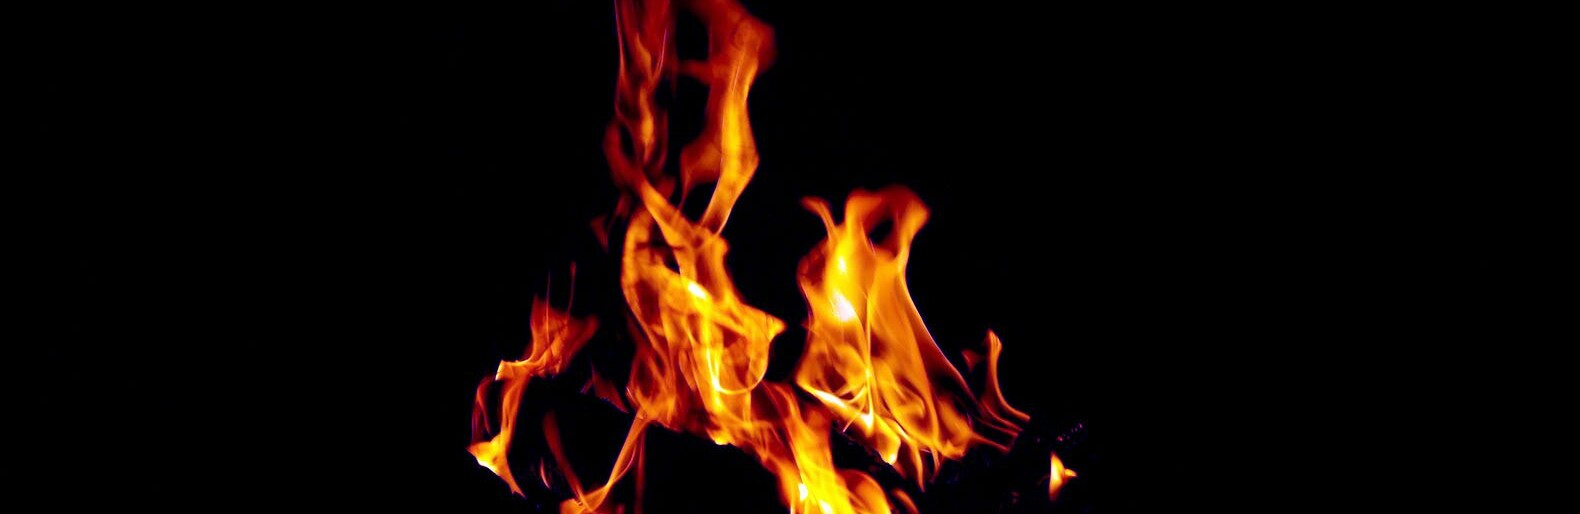 Ущерб экологии от пожаров в Белгородской области составил 28 млн рублей